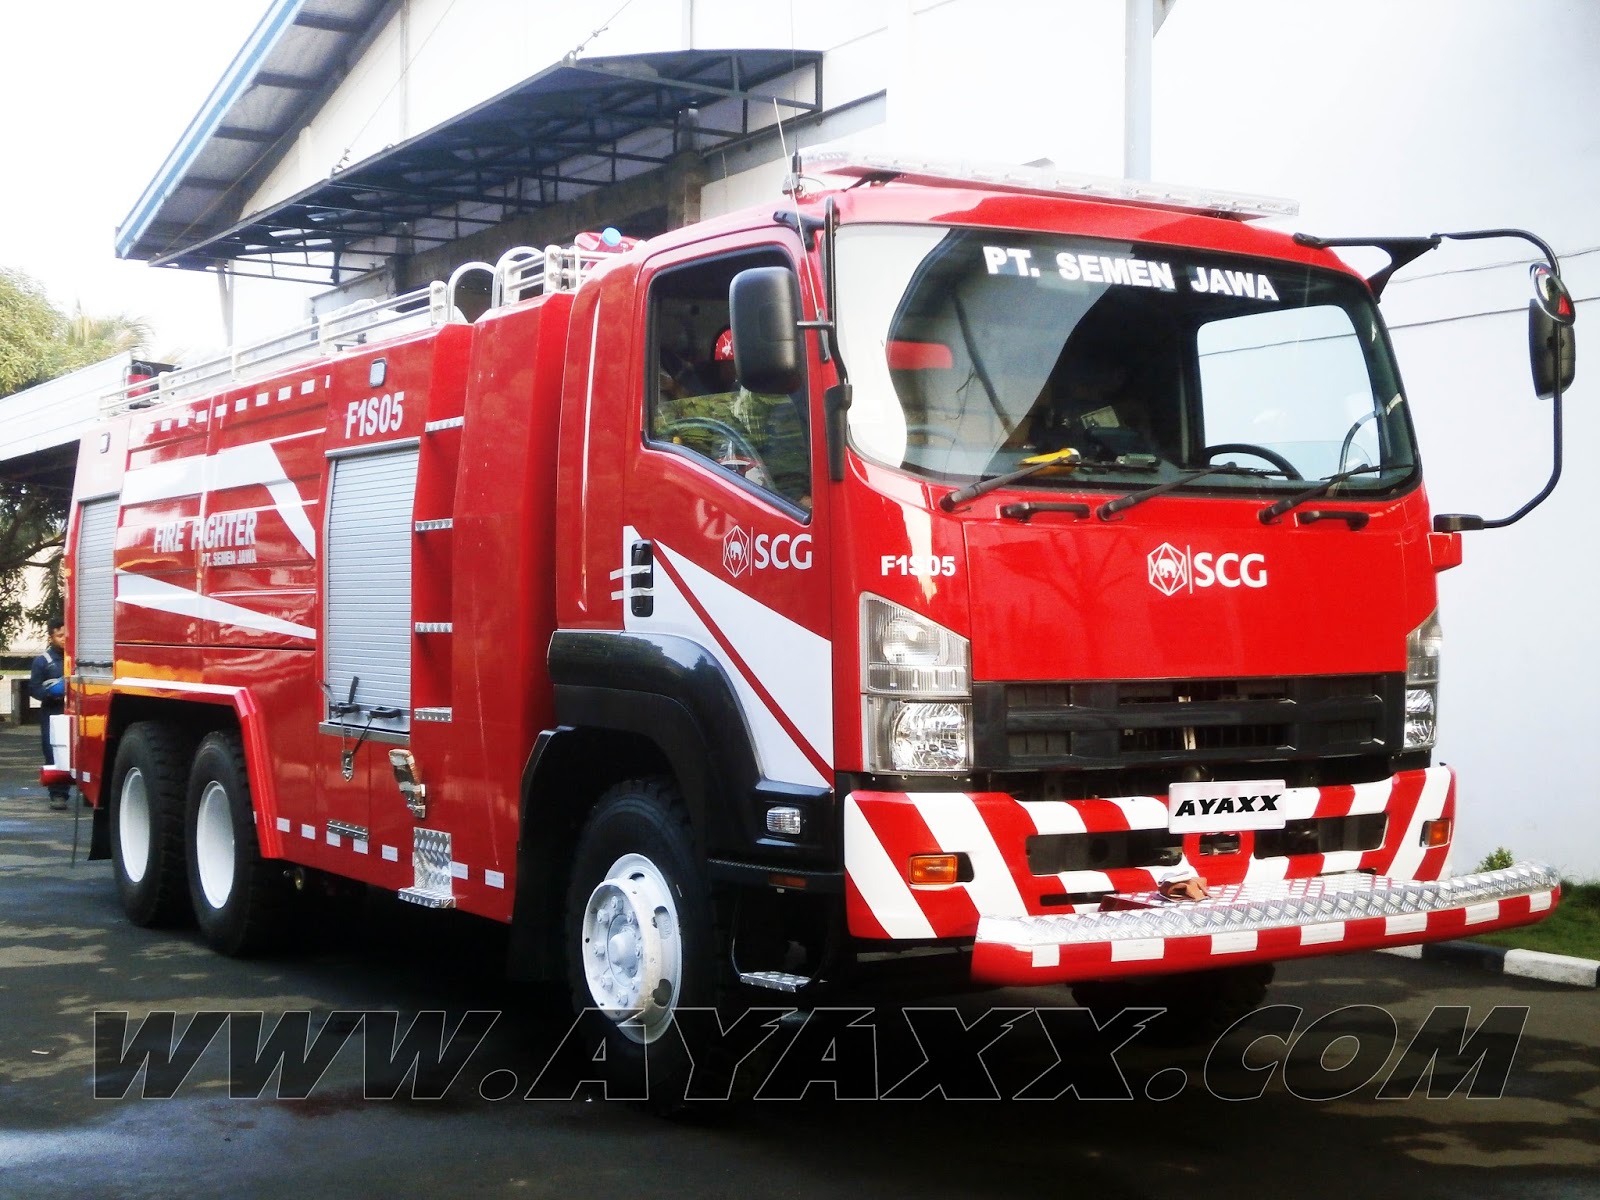  Mobil  Pemadam  Kebakaran  AYAXX Untuk PT Semen Jawa Fire 